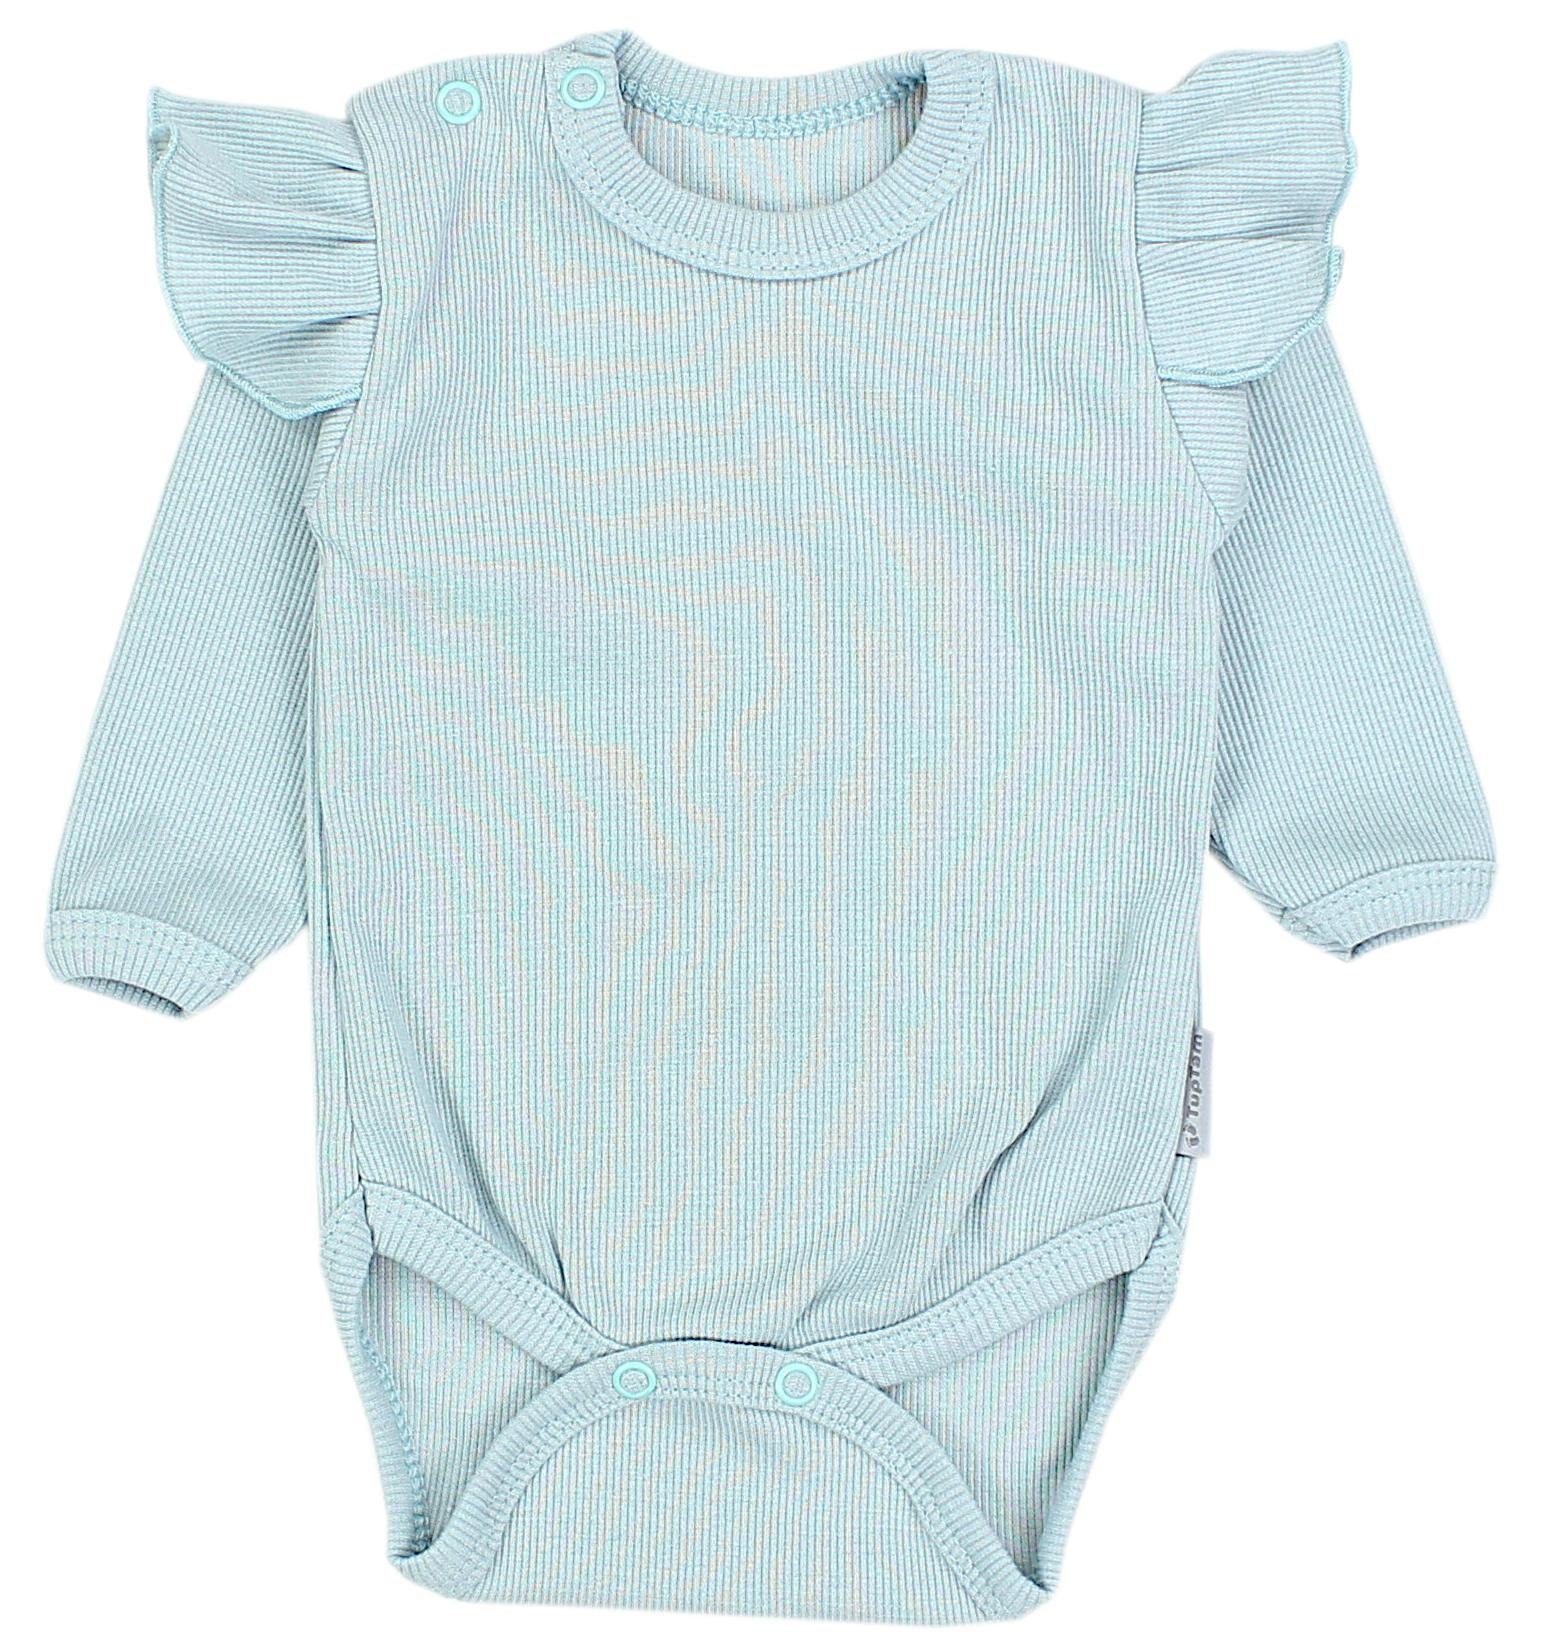 TupTam Erstausstattungspaket Baby Mineralgrün Mädchen Rüsche TupTam Babyhose mit Langarmbody Outfit Babykleidung Rippstoff Rippstoff